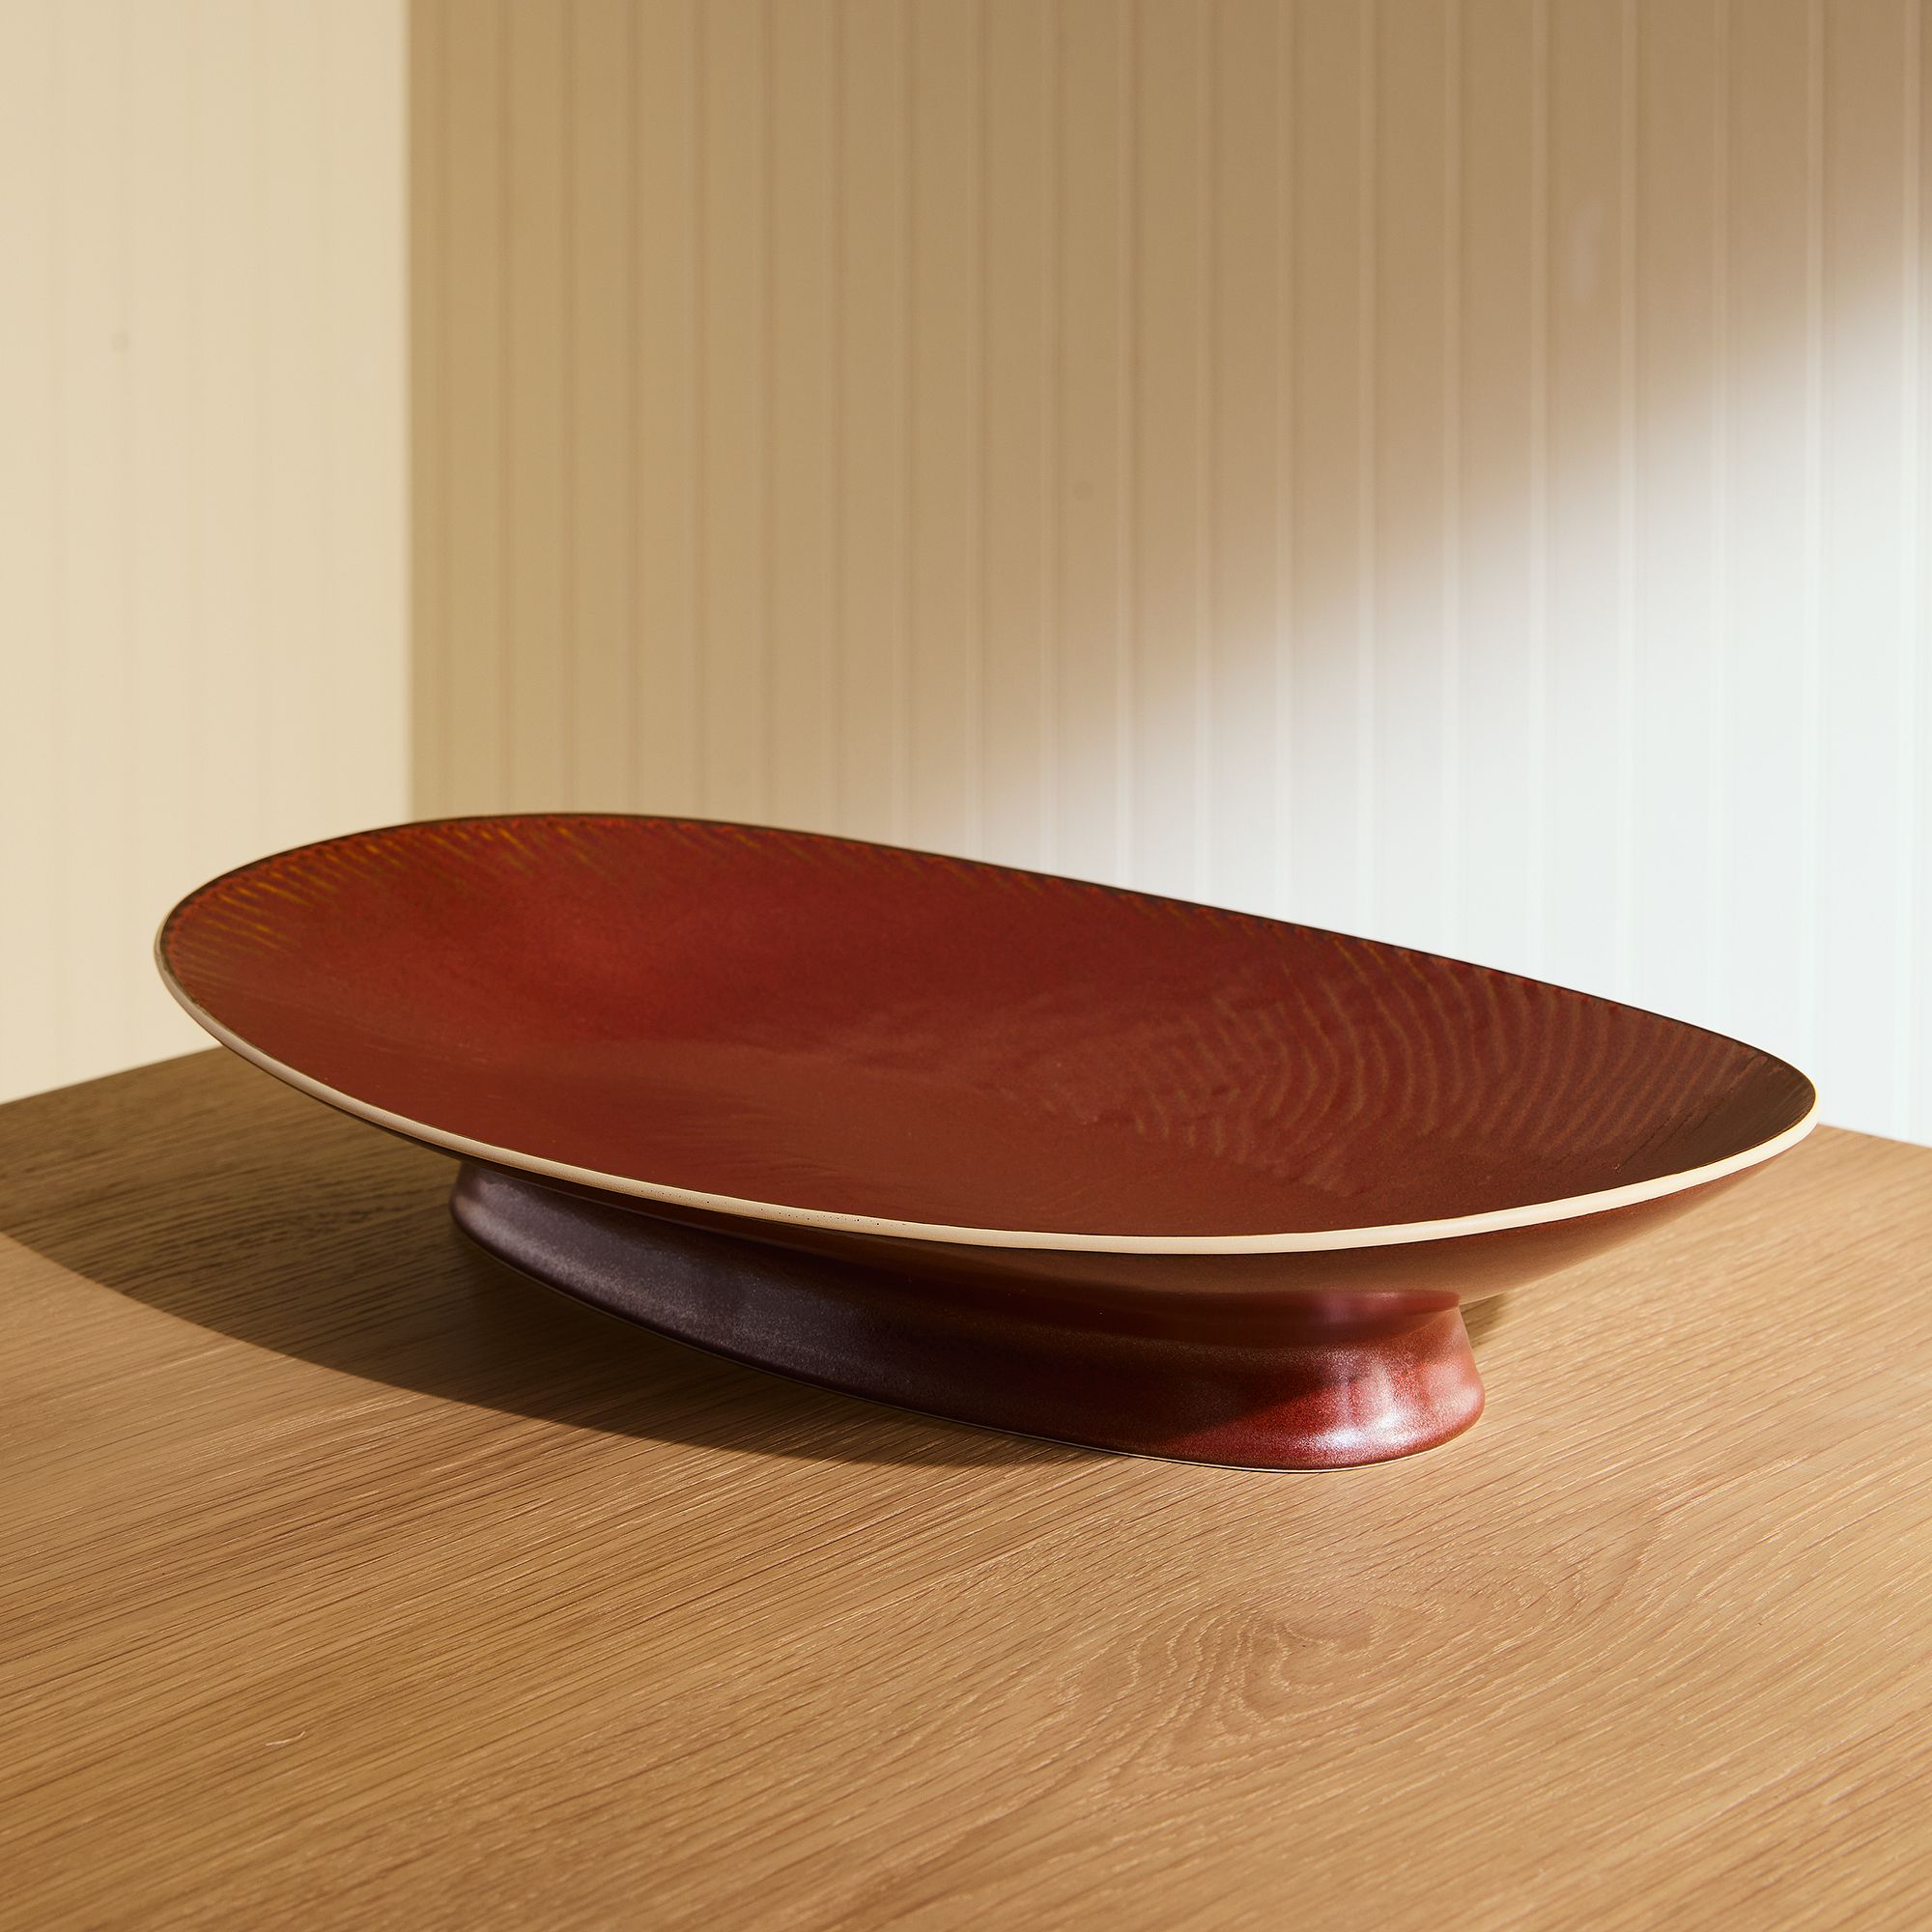 Marcus Samuelsson Carved Pattern Serving Platter | West Elm